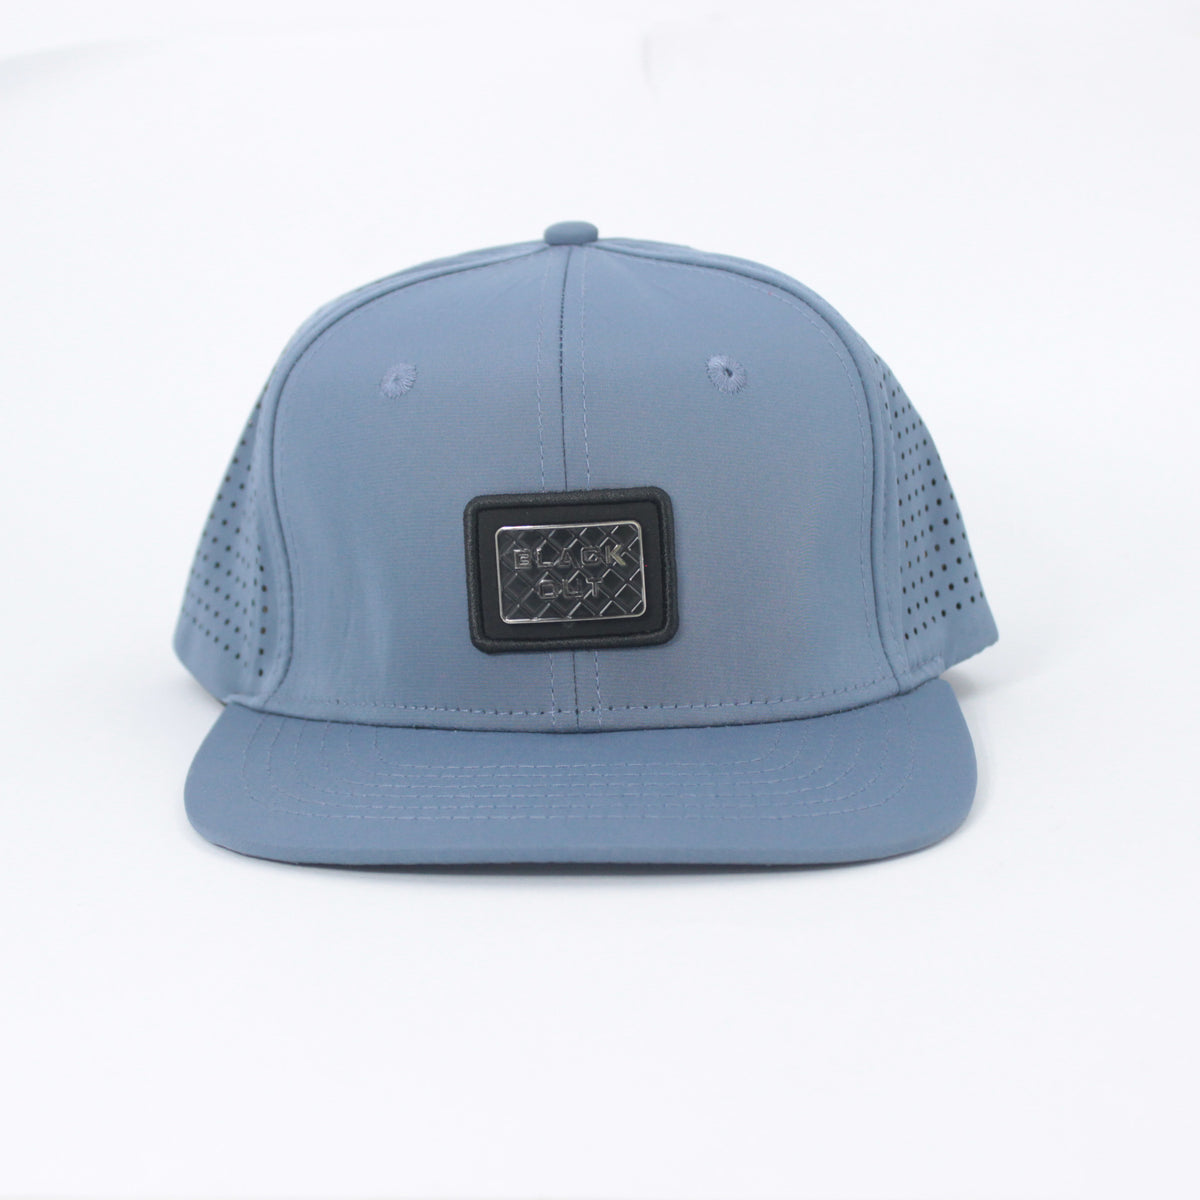 PARISIAN BLUE SNAPBACK CAP